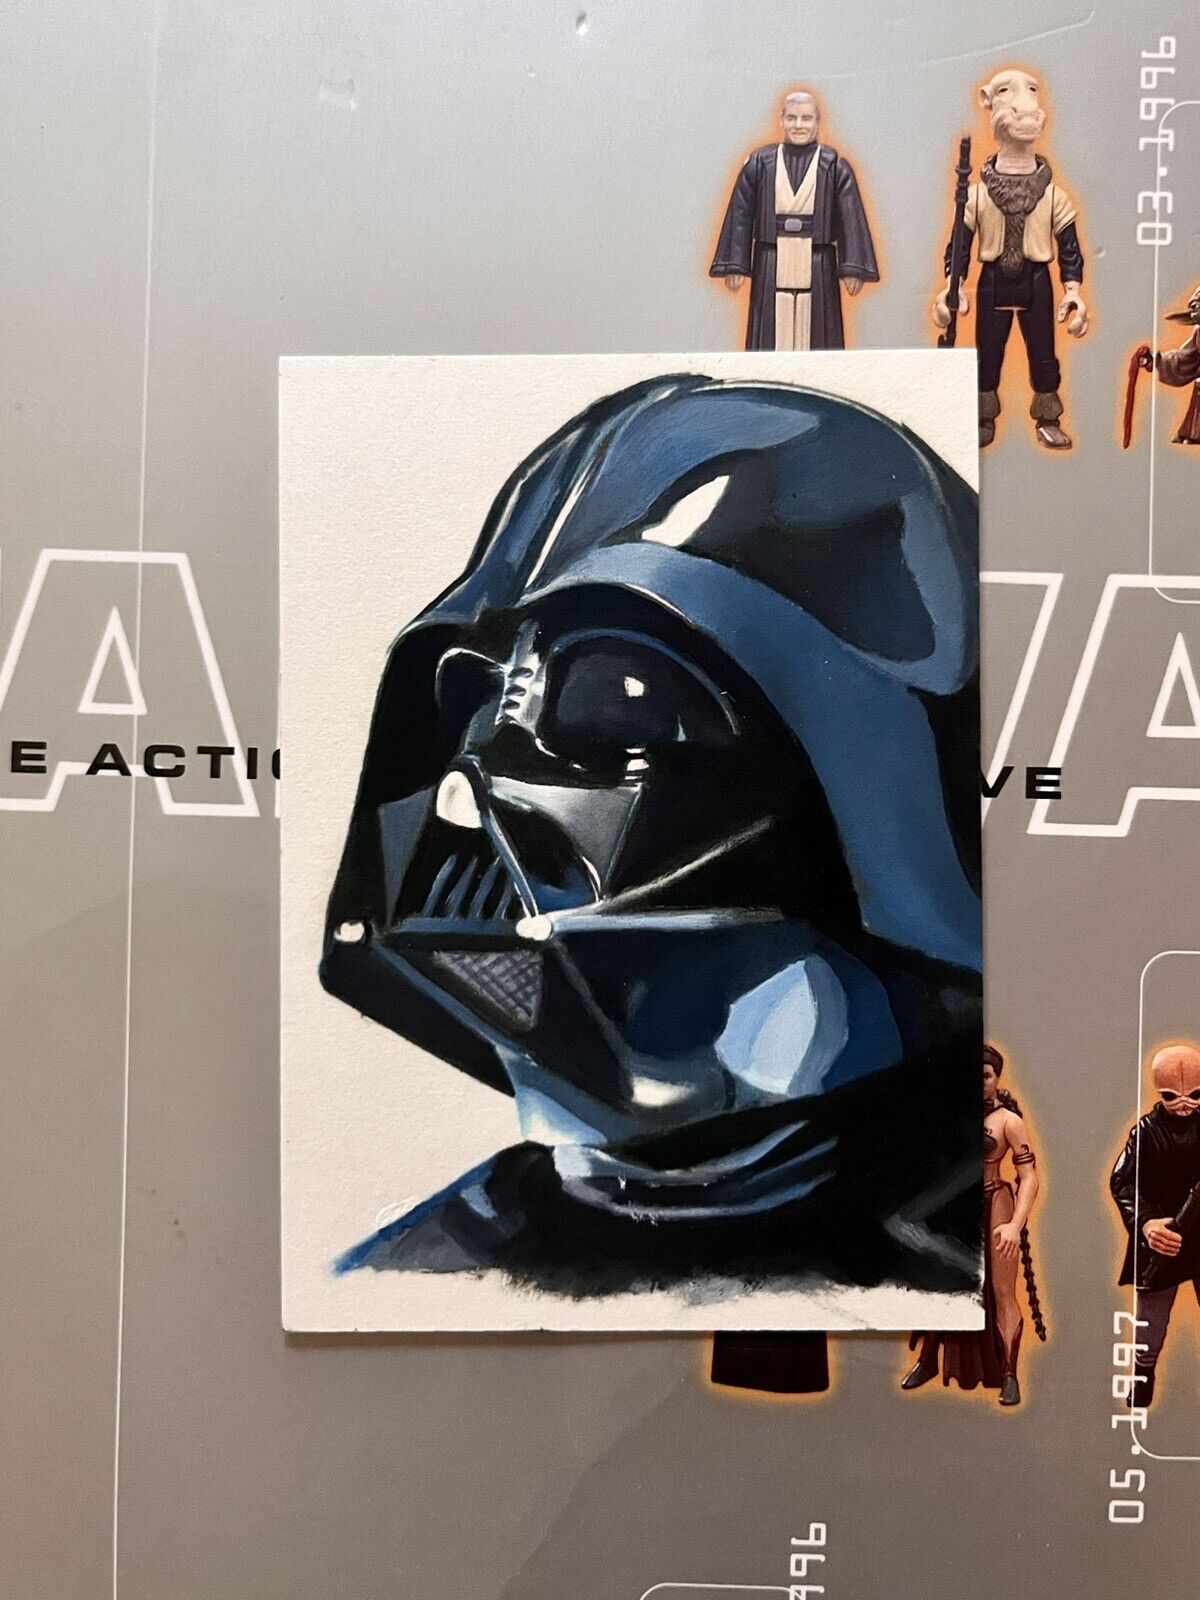 2012 Topps Star Wars Galactic Files Darth Vader 1/1 Sketch Card Kevin Graham